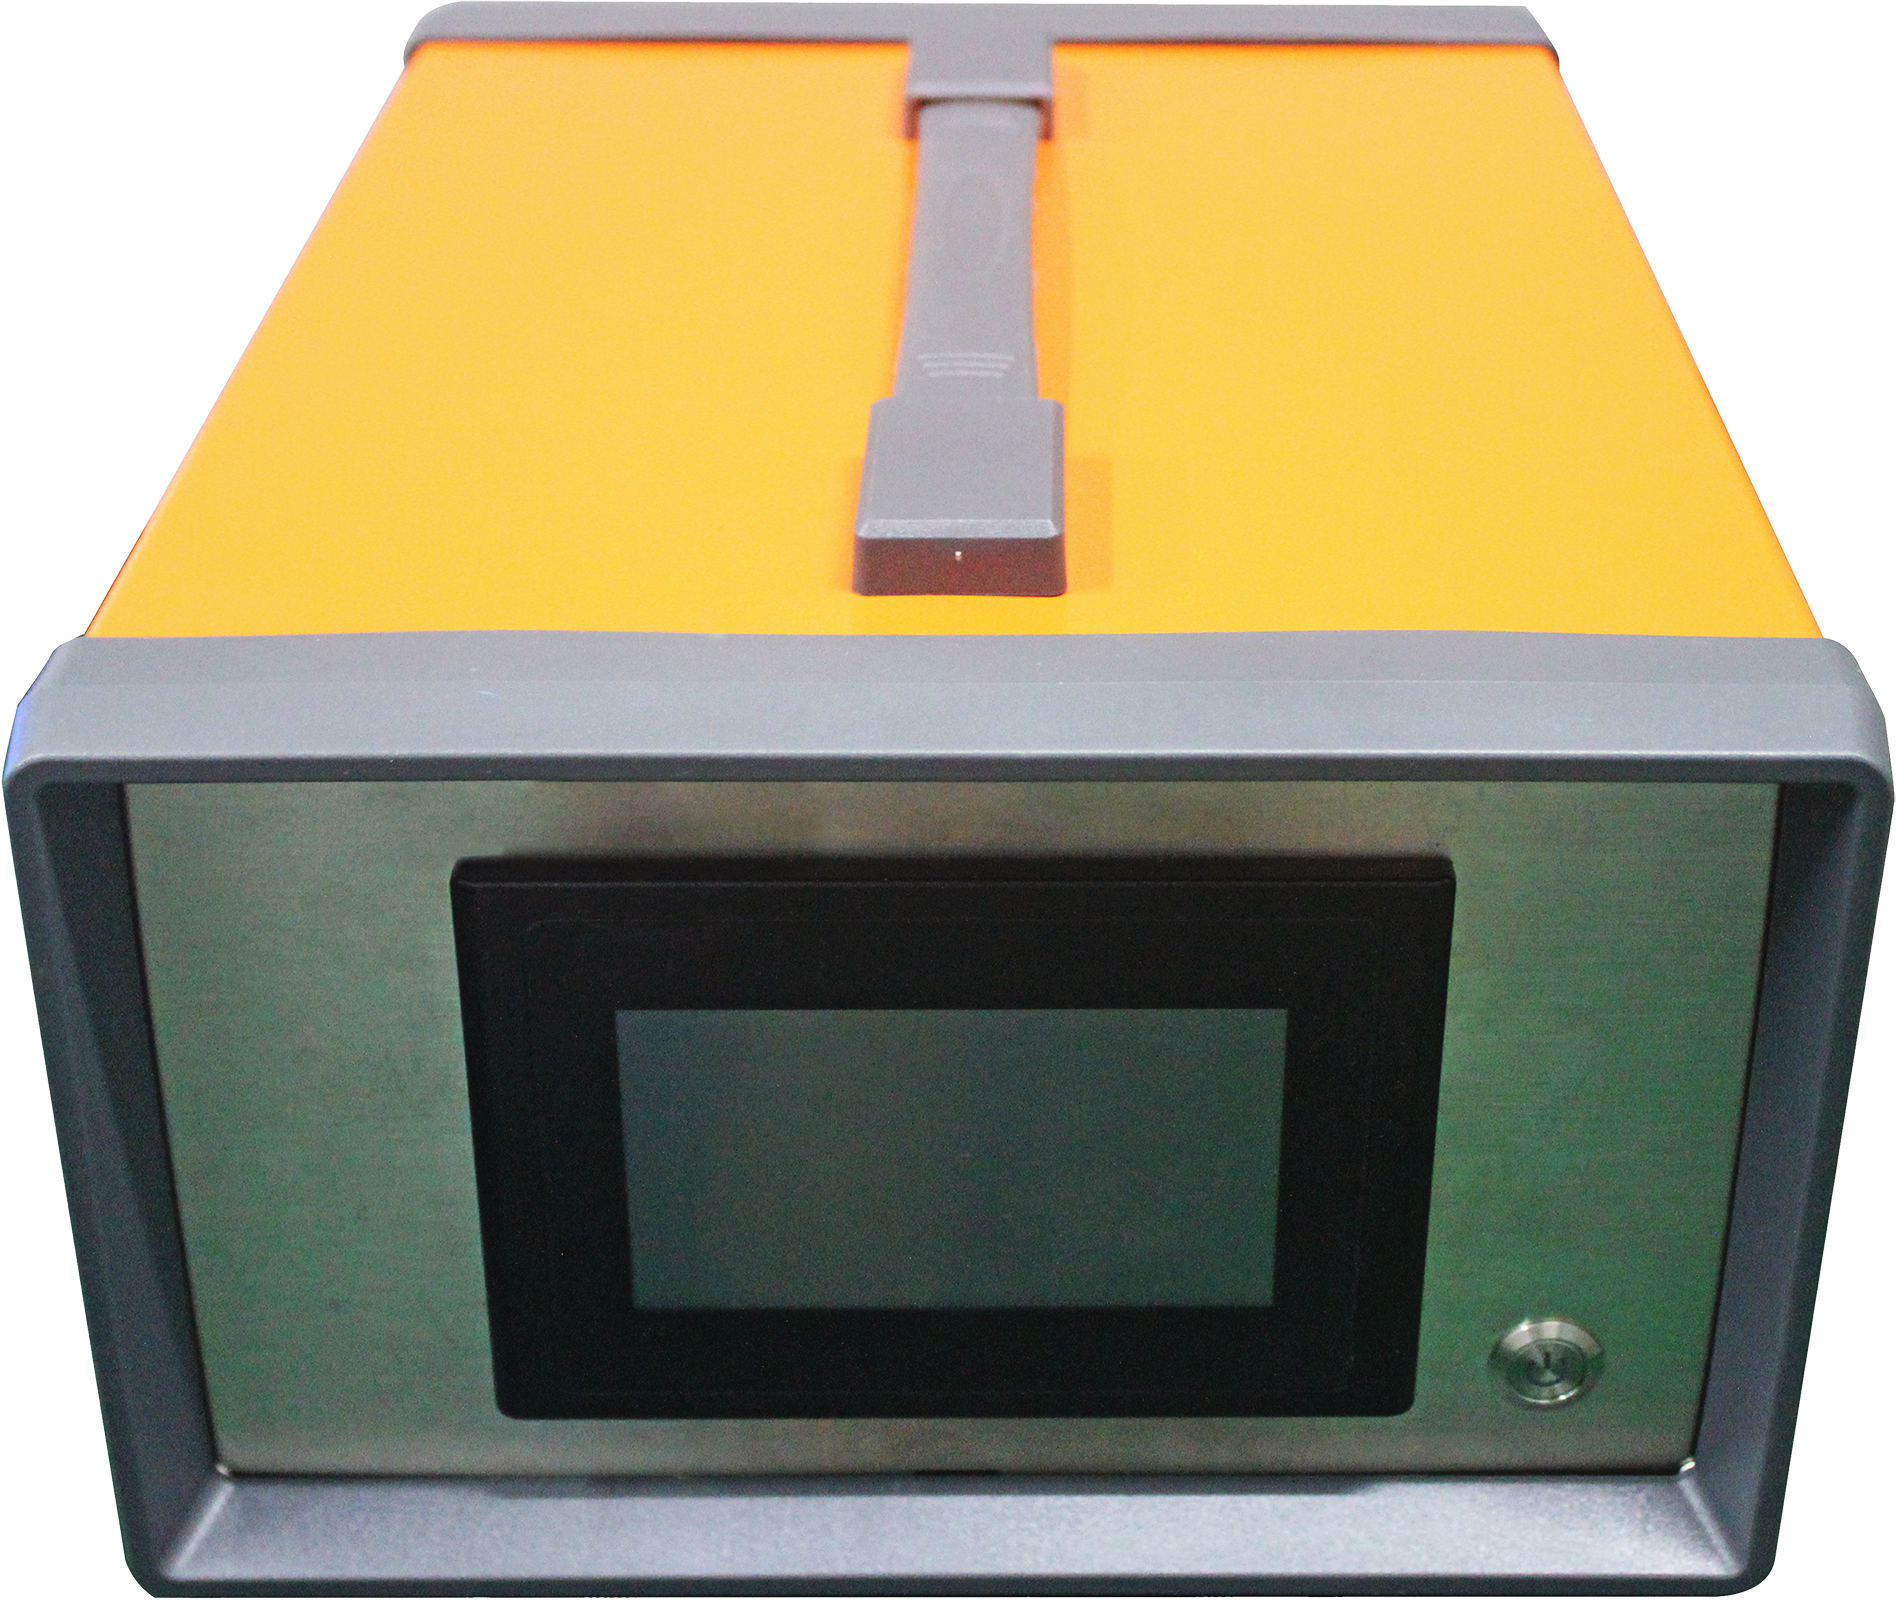 AM-5401 Portable Ozone Analyzer